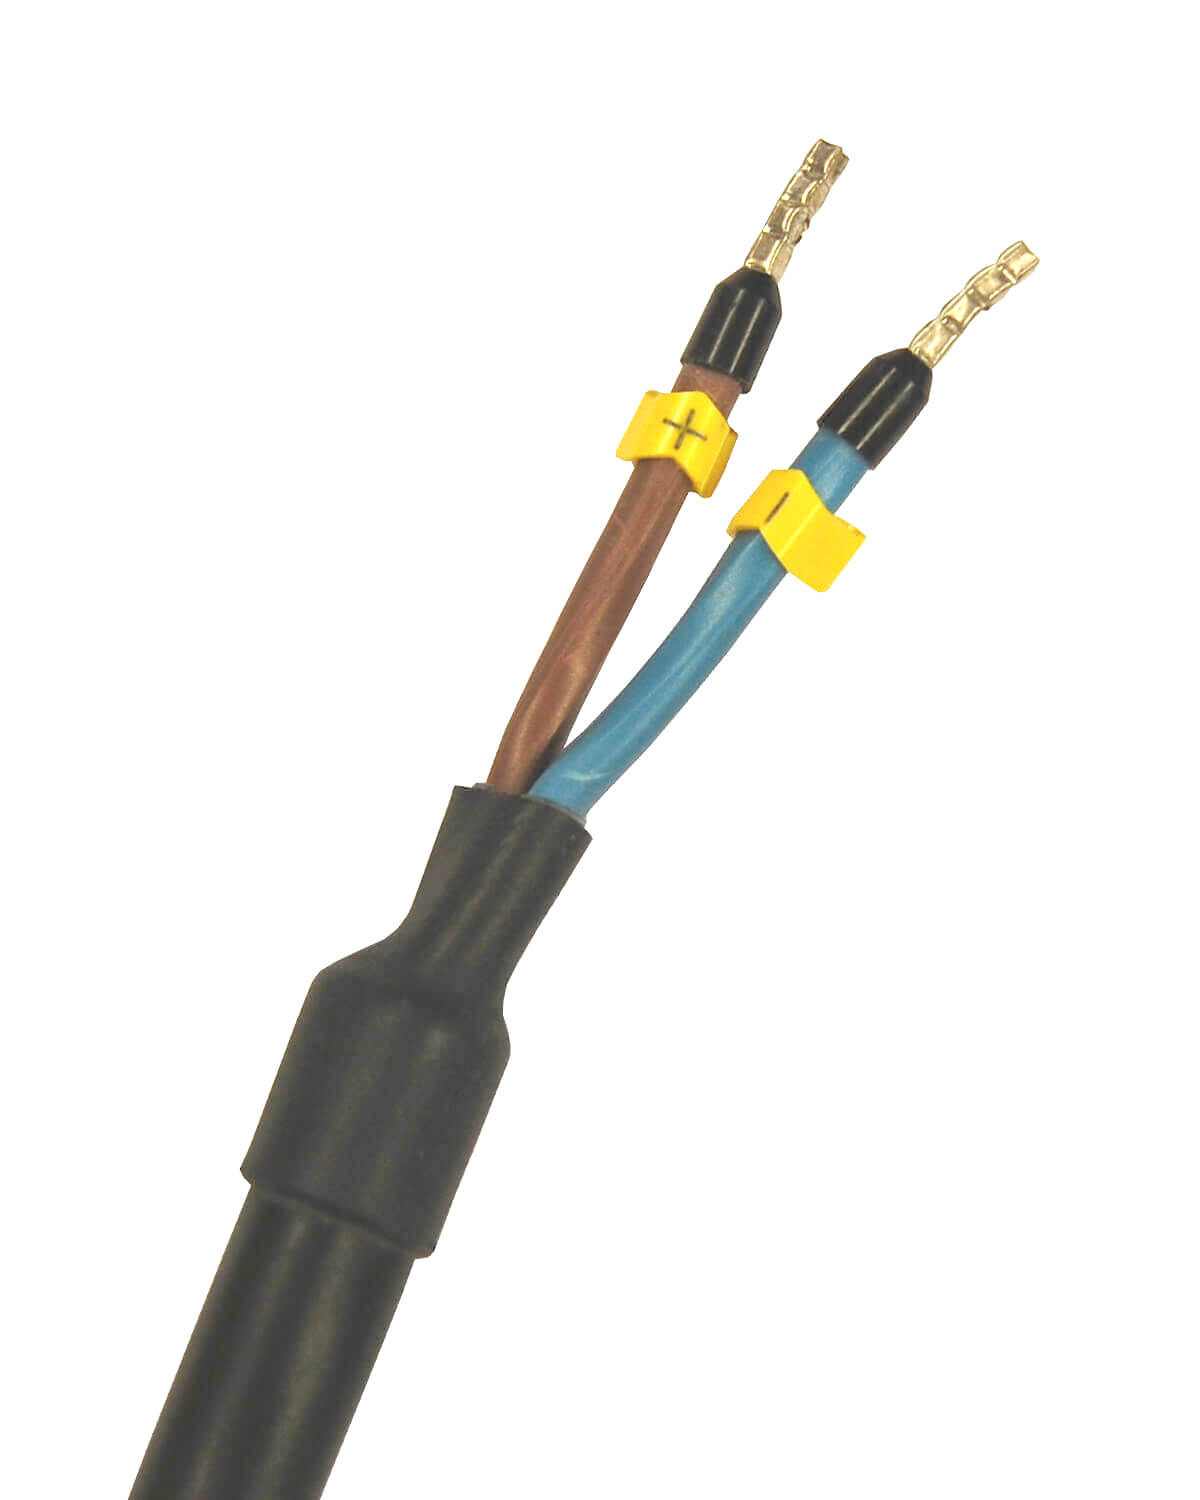 Ein schwarz-gelbes Kabel mit zwei Adern, geeignet für den Trinkwasser-Einsatz in PURION 1000 12/24 V DC OPD-Systemen der PURION GmbH.